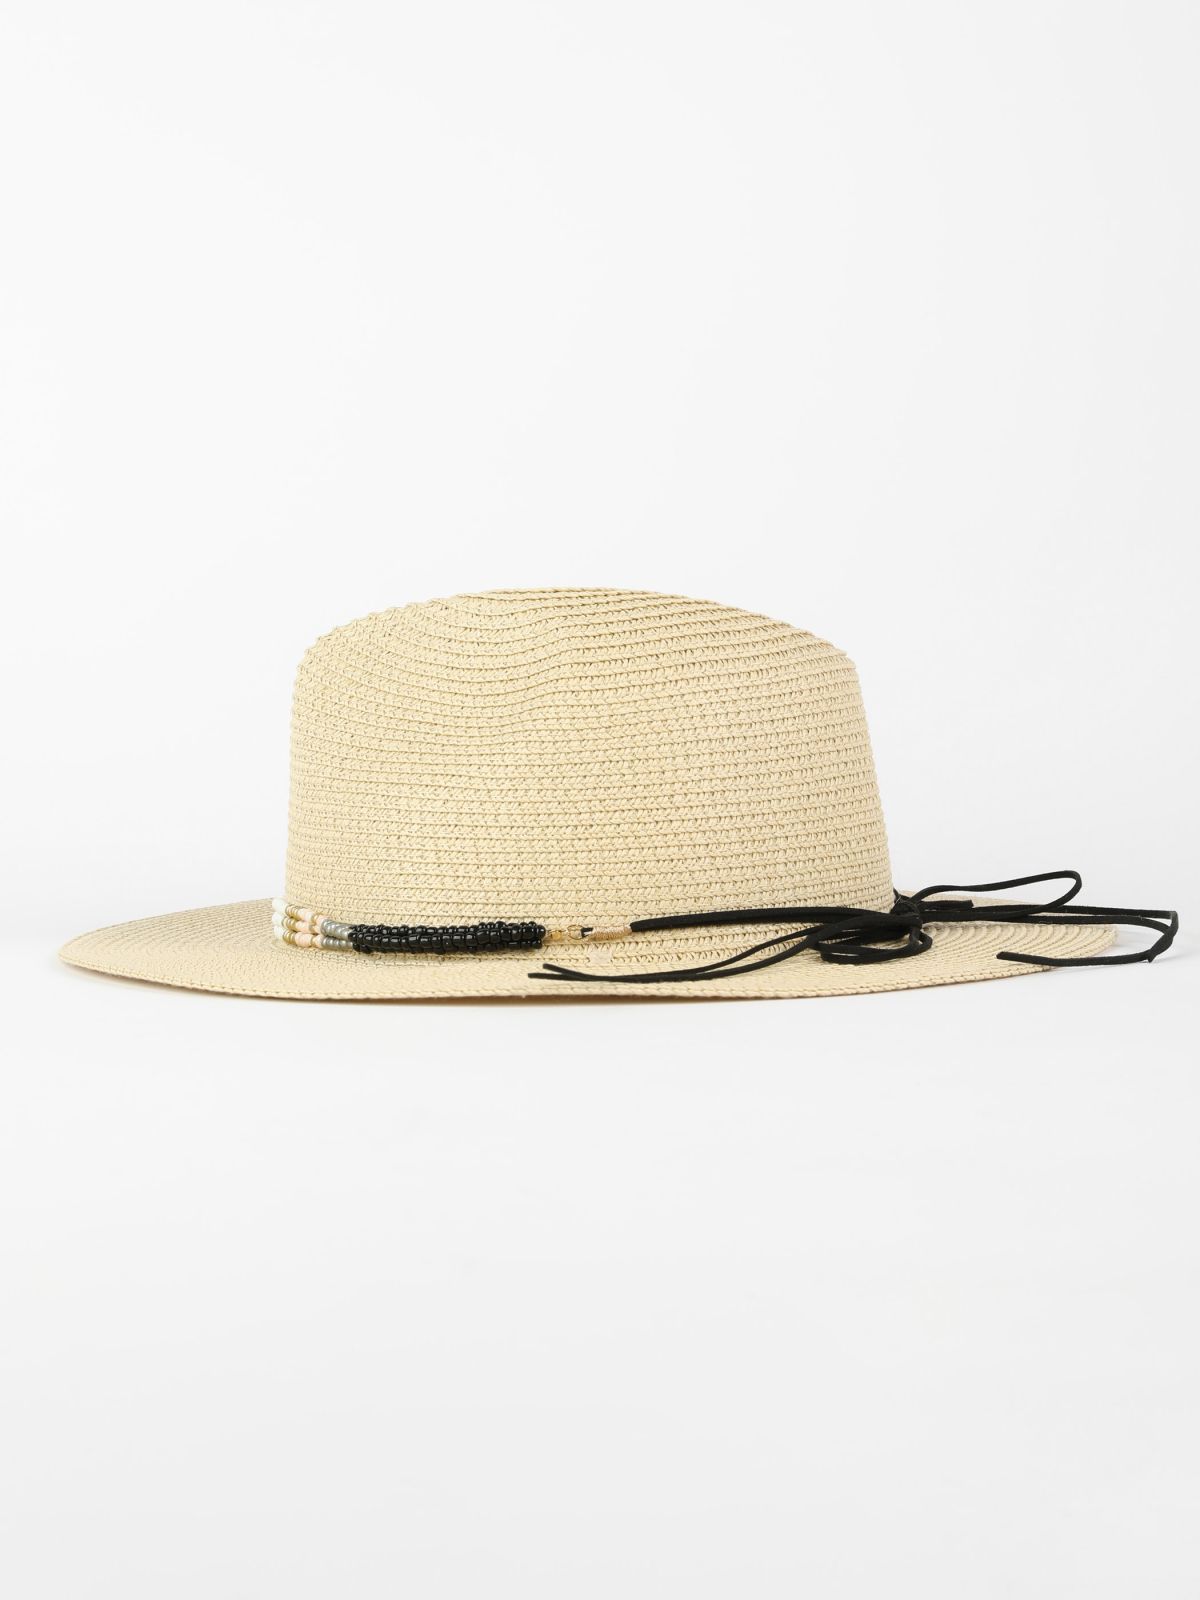  כובע קש רחב שוליים / נשים של YANGA